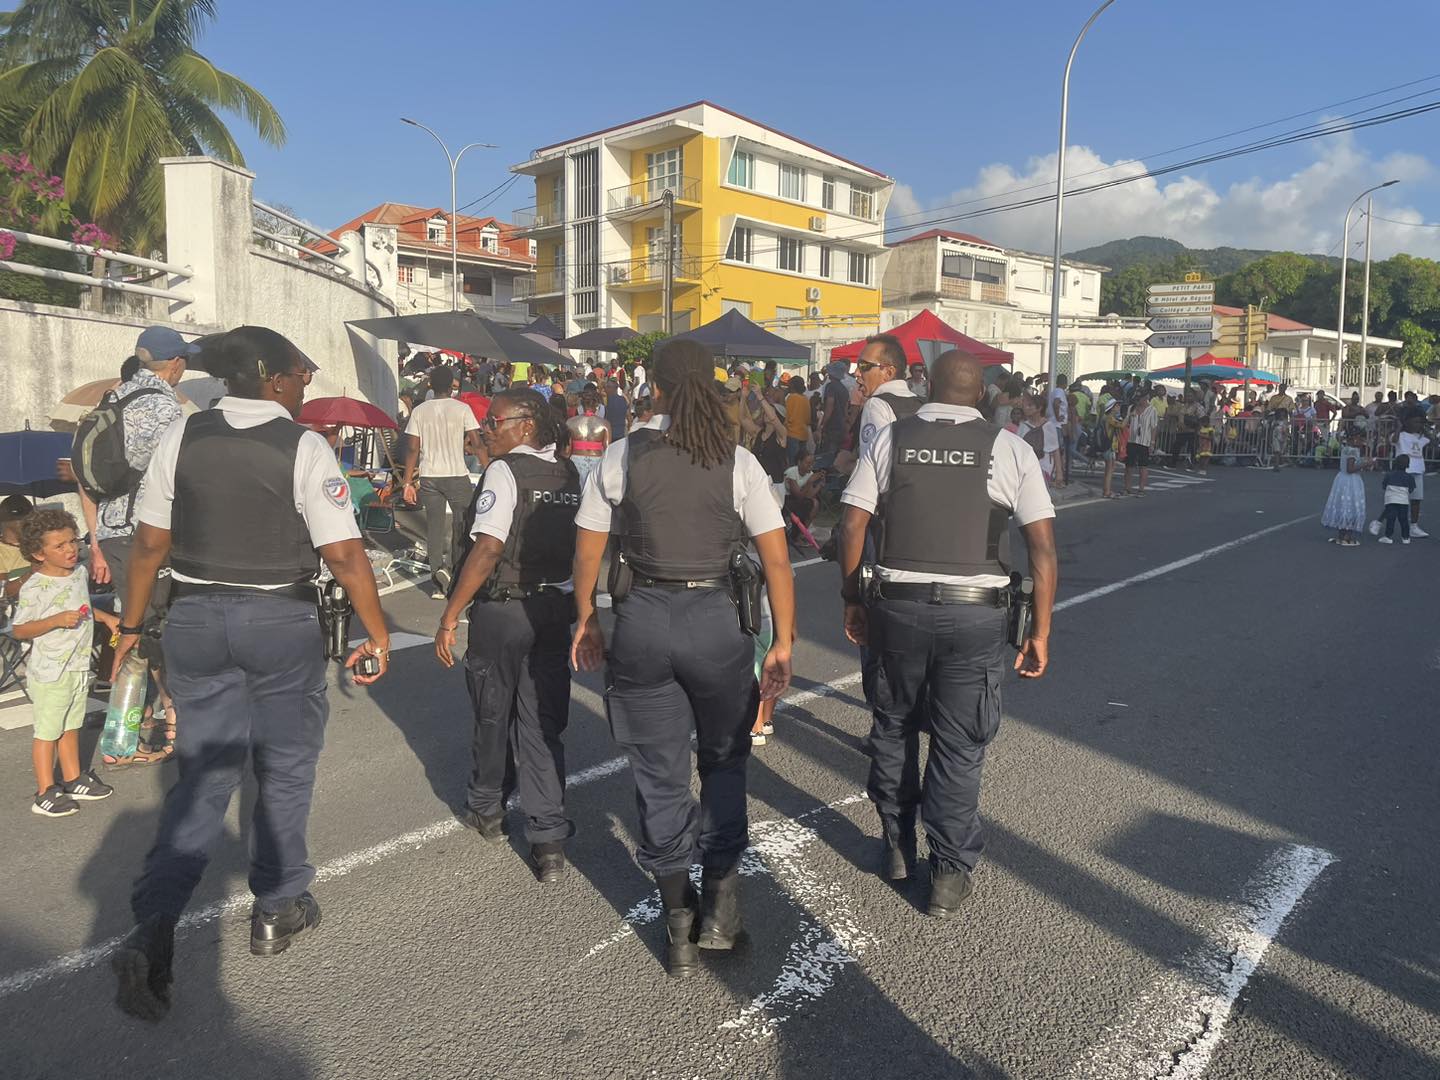     Giga Parade à Basse-Terre : de nombreuses armes blanches saisies

